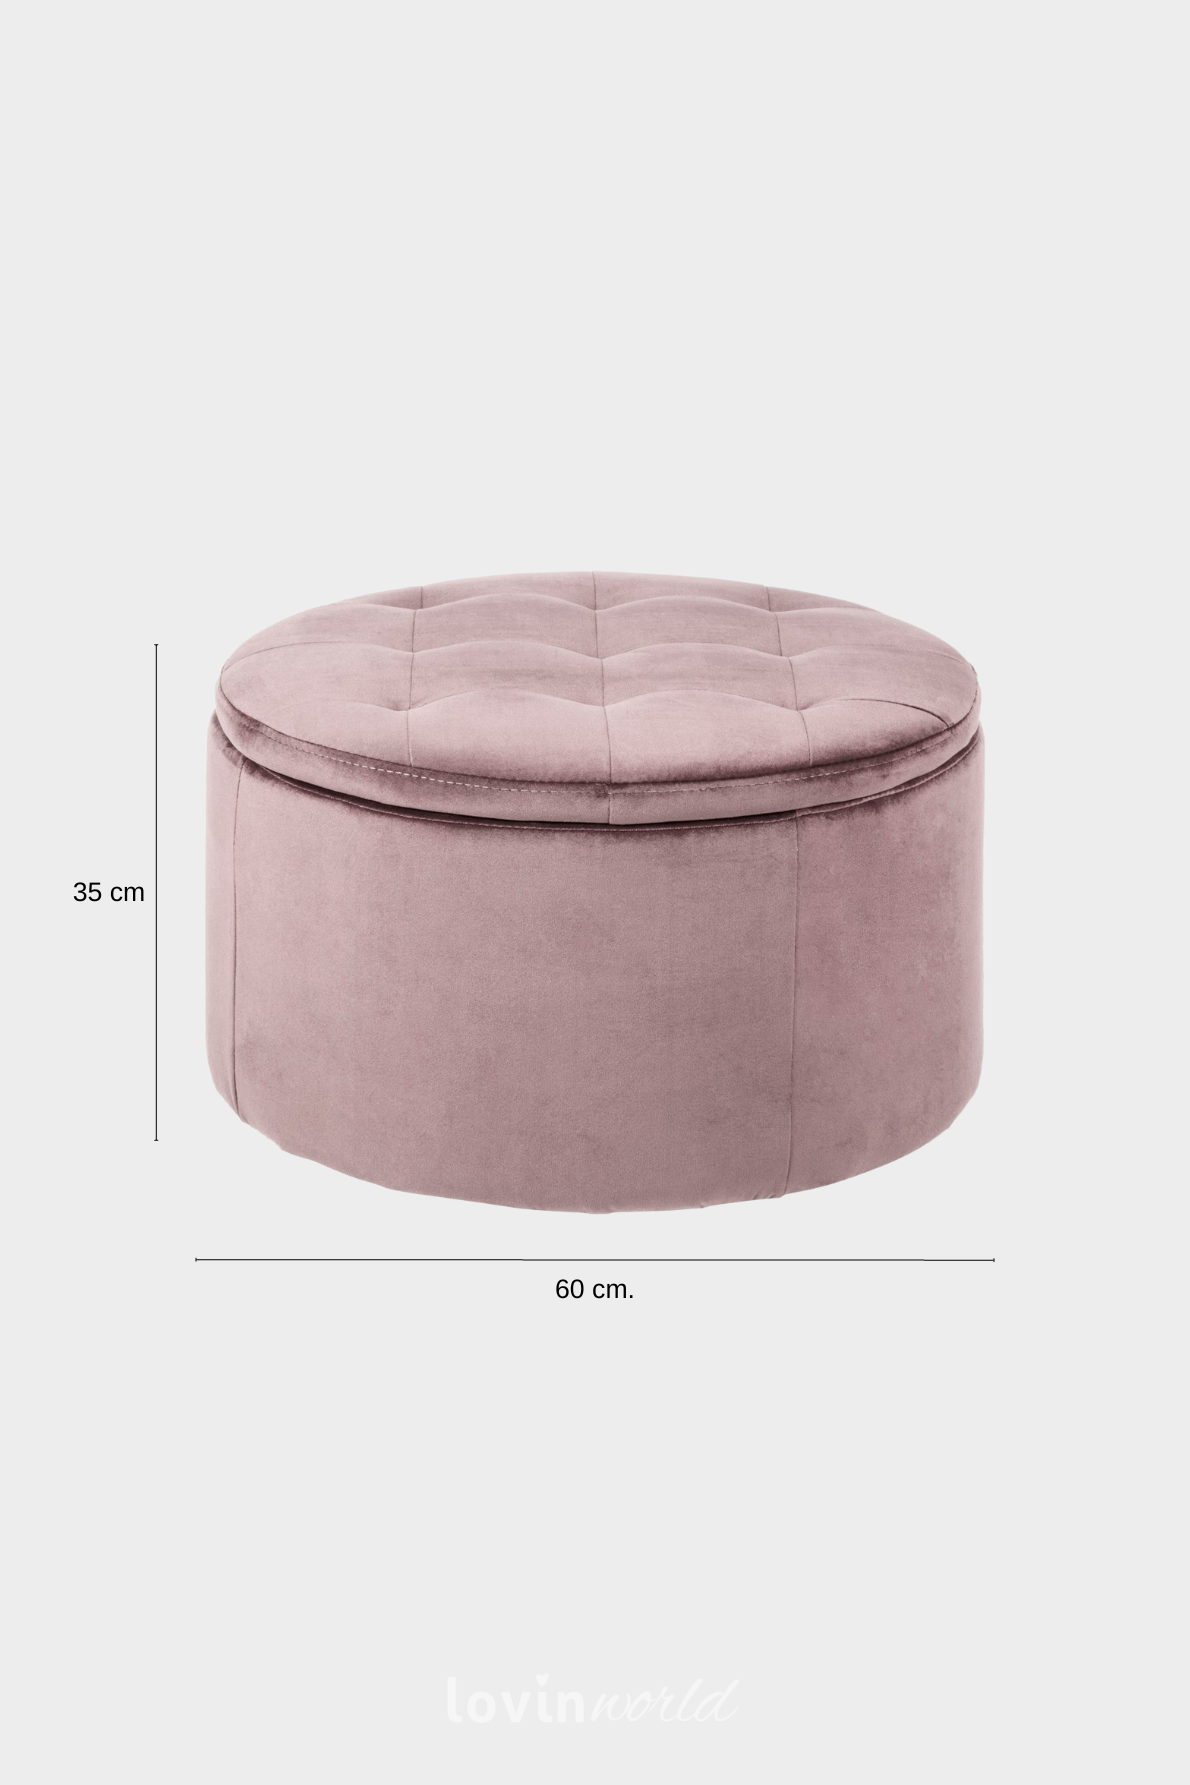 Pouf contenitore Worry, in colore rosa 35x60 cm.-4